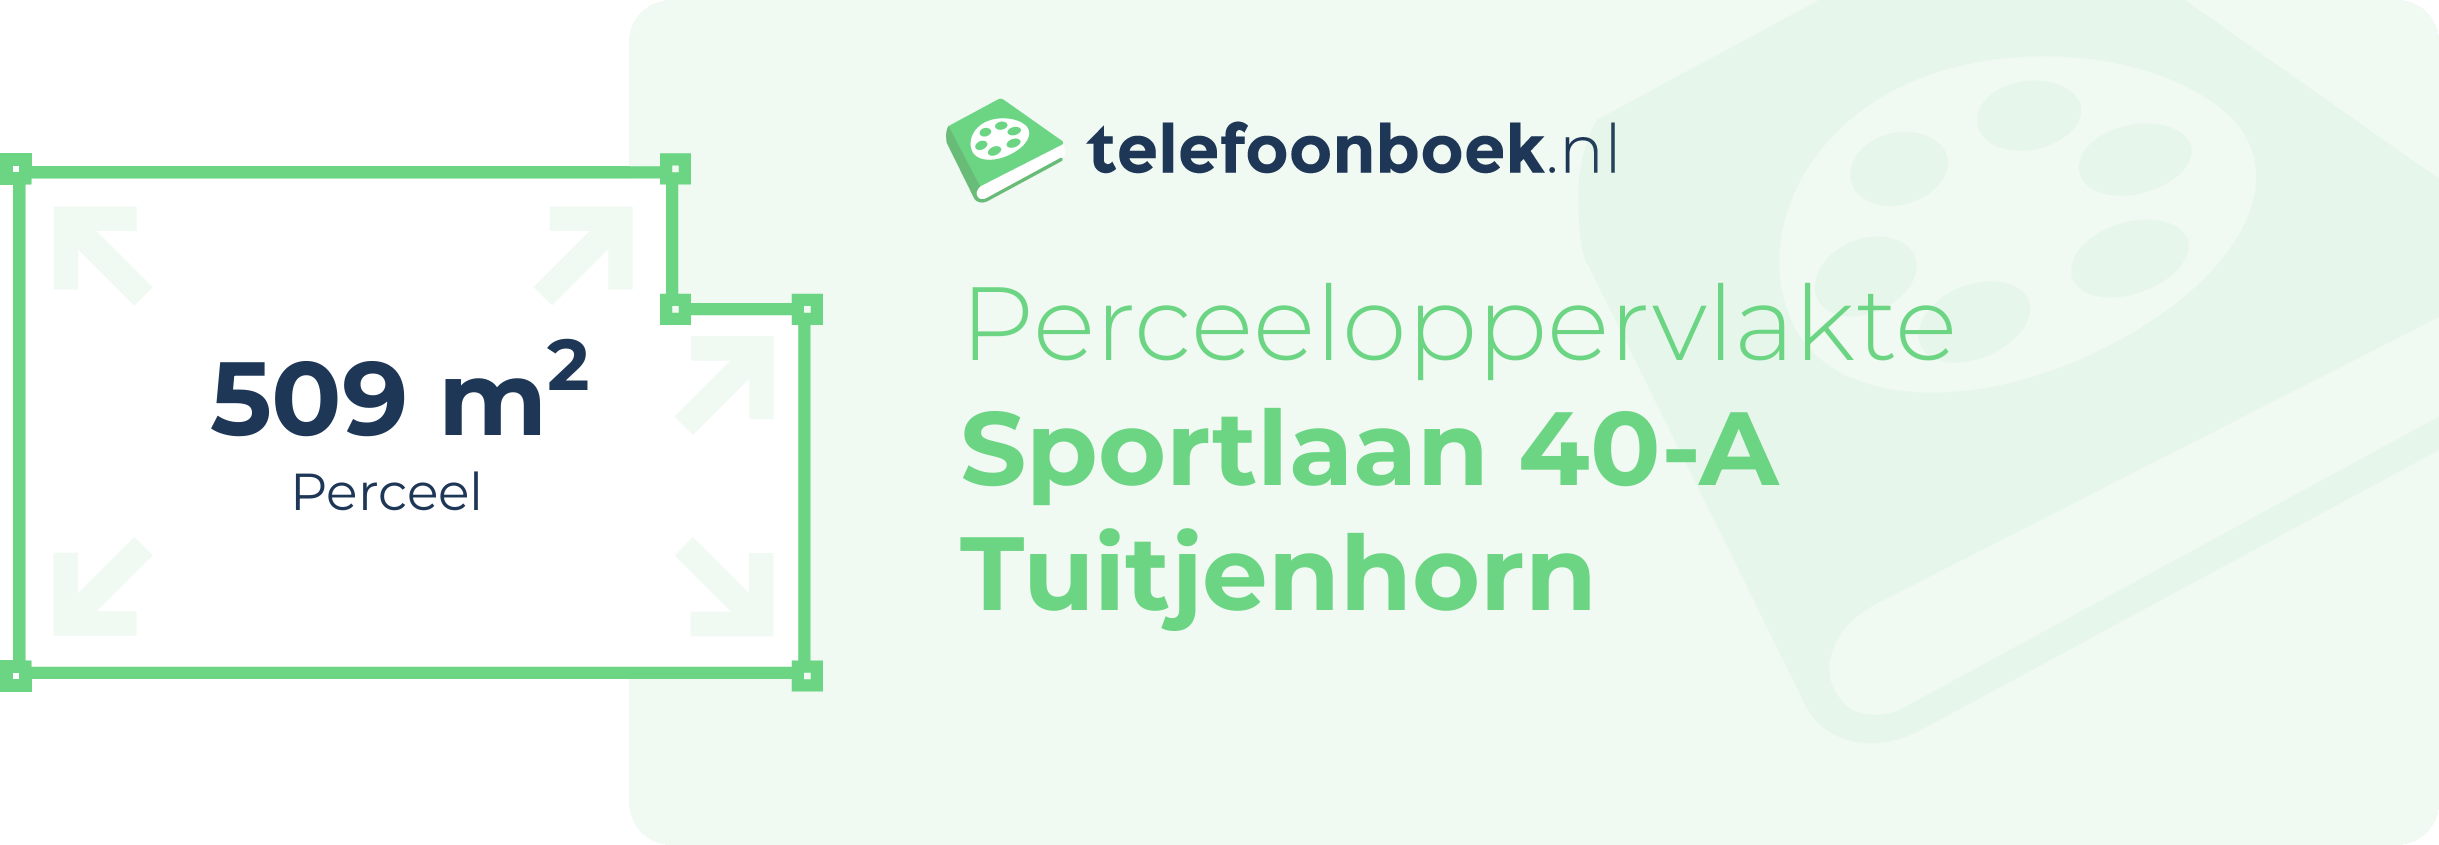 Perceeloppervlakte Sportlaan 40-A Tuitjenhorn